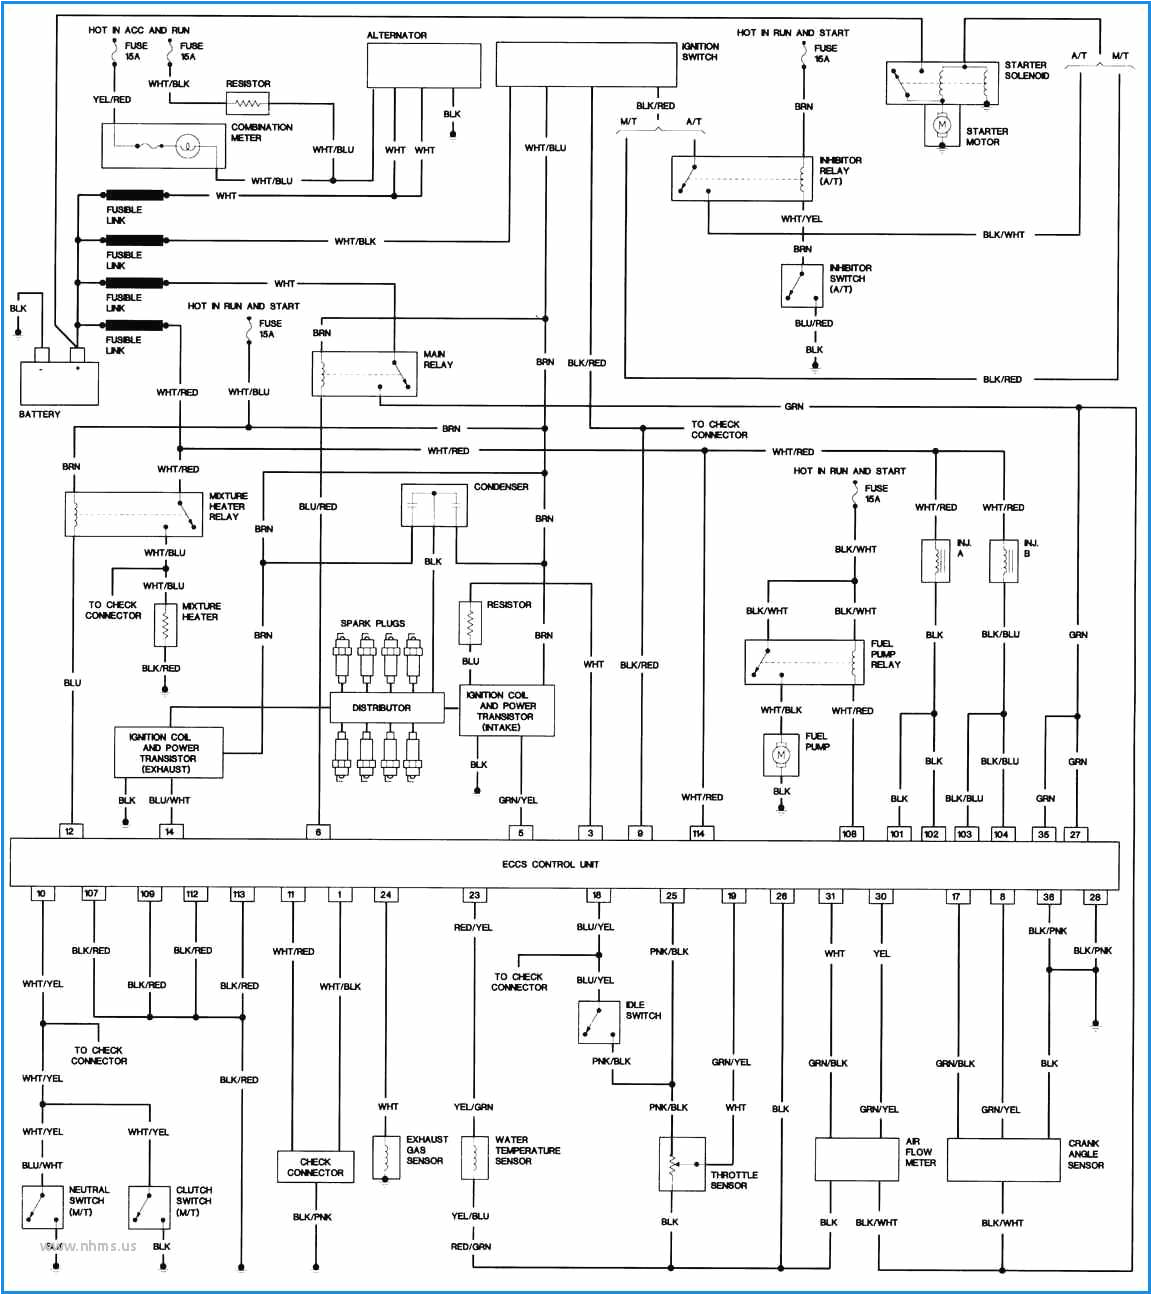 1996 Nissan Hardbody Wiring Diagram Wiring Diagram 96 Nissan Pickup Use Wiring Diagram